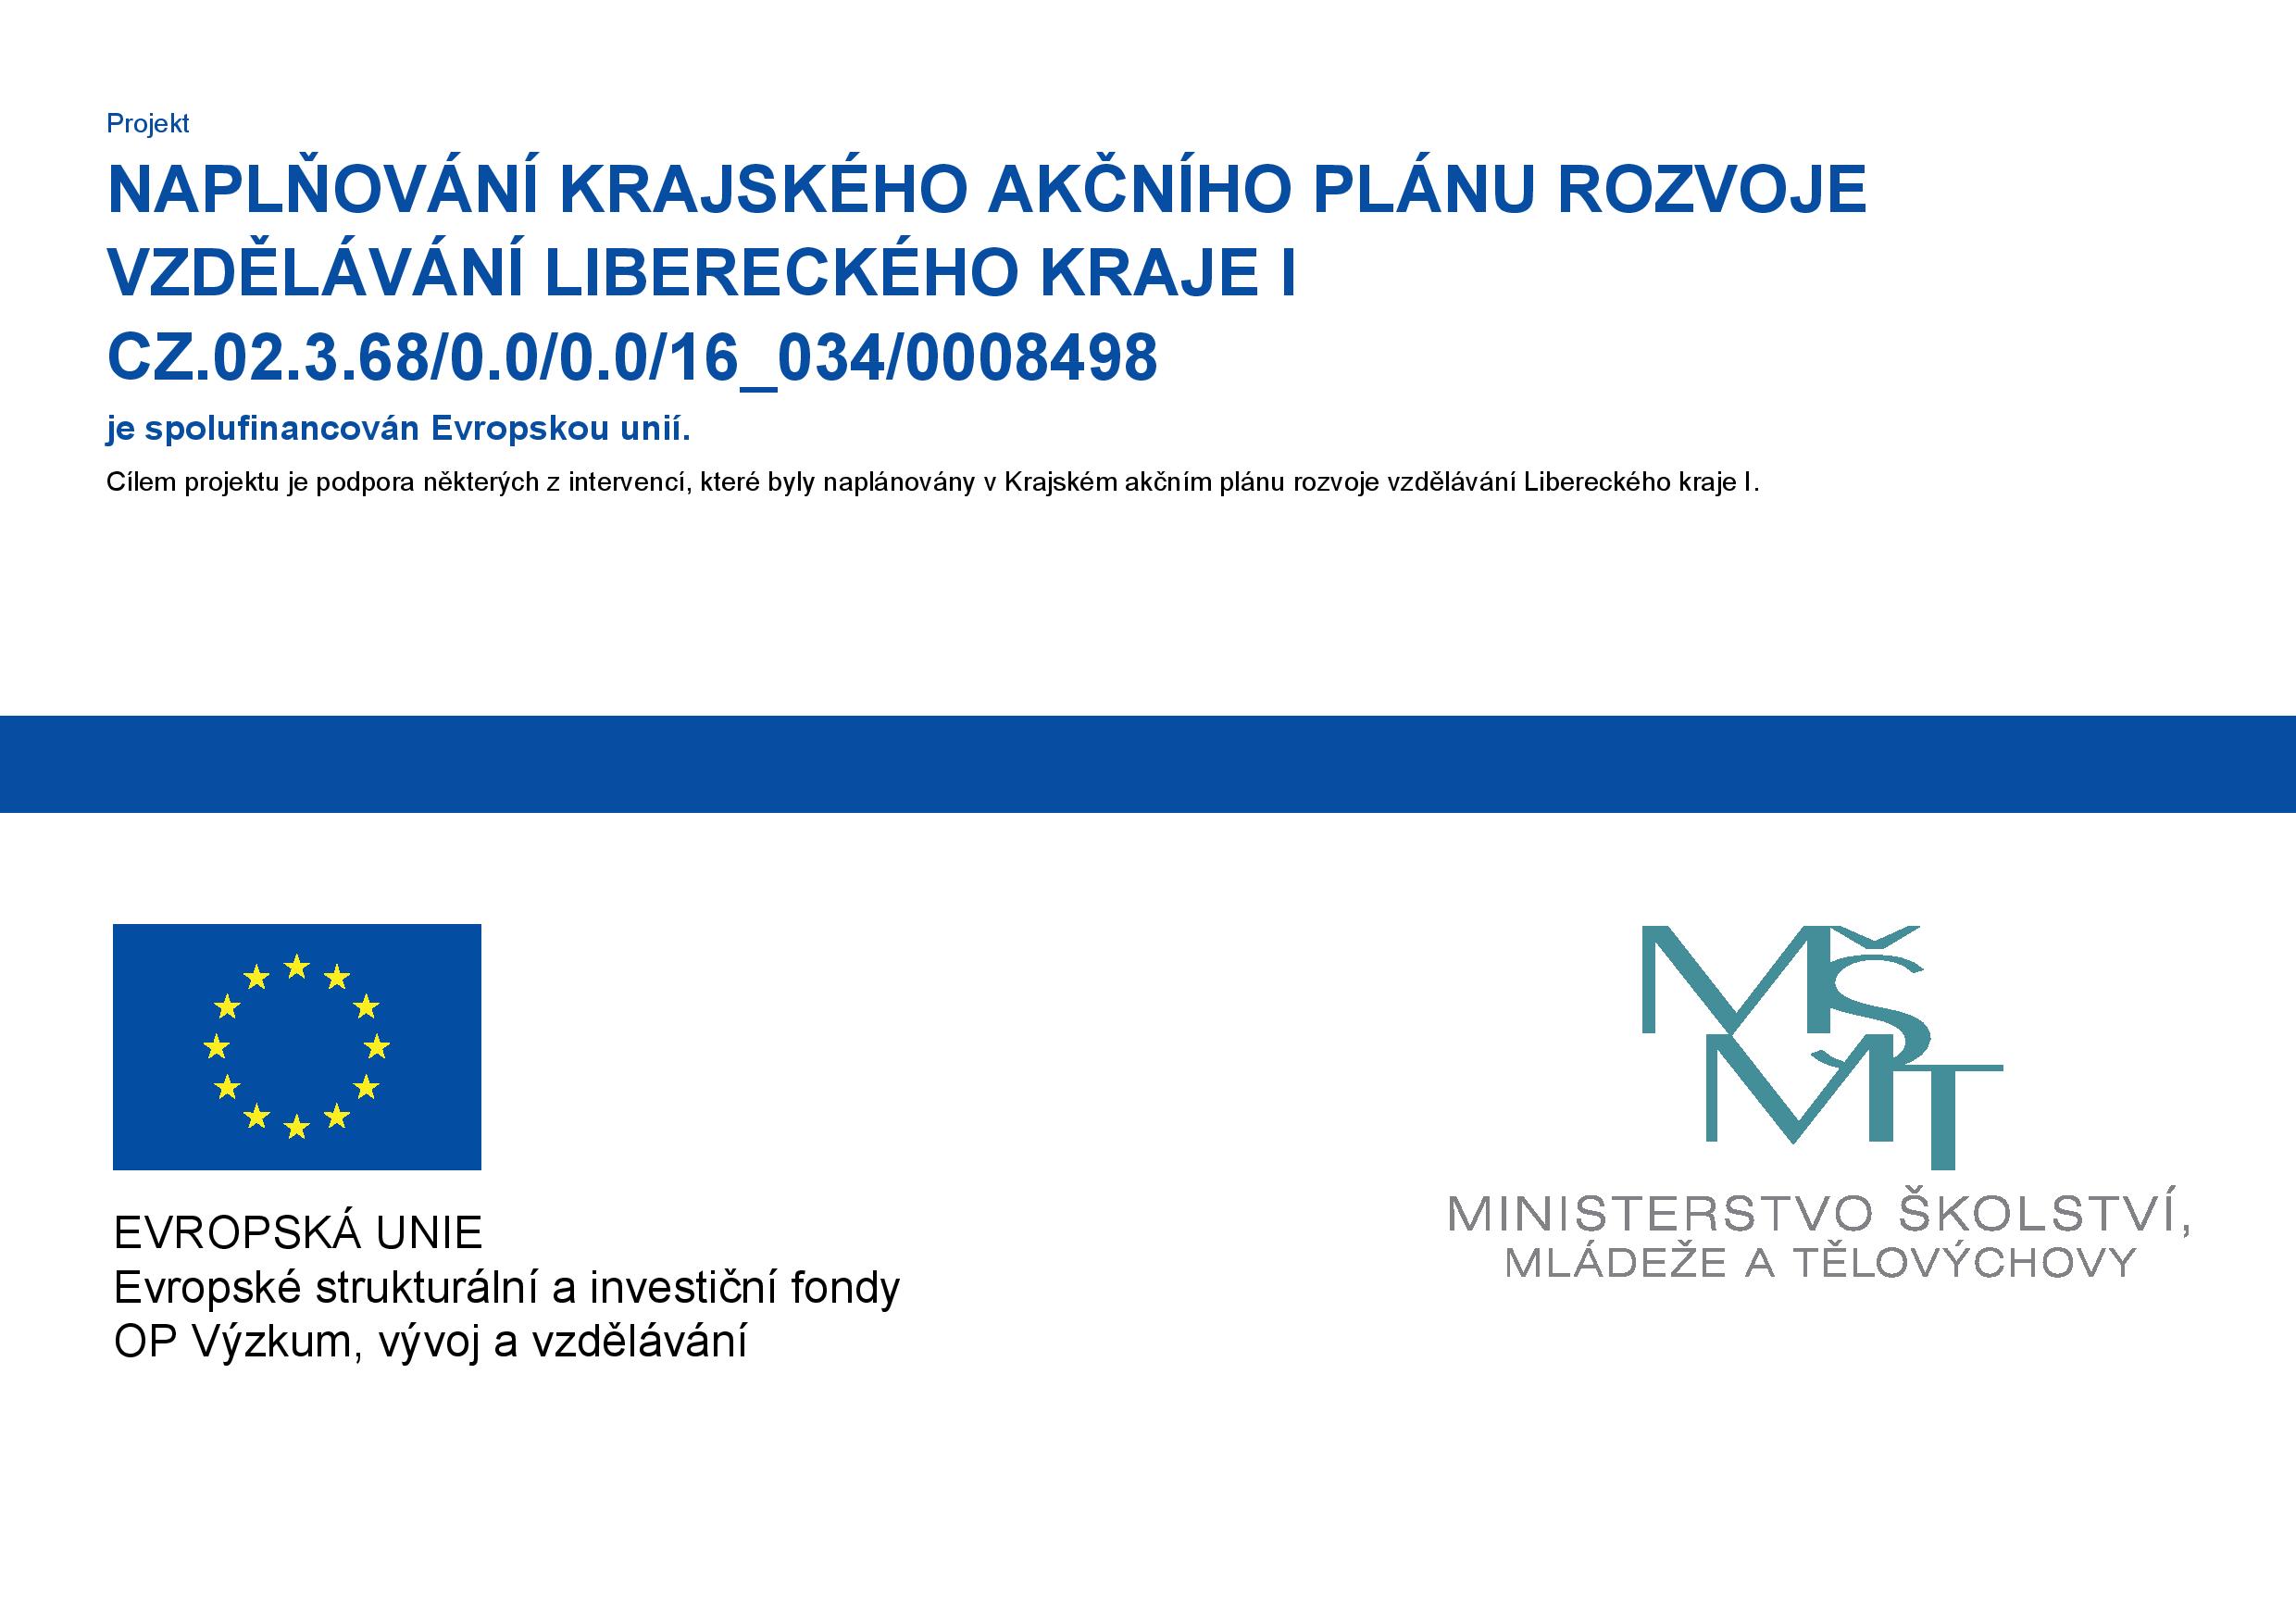 Informační plakát projektu Naplňování krajského akčního plánu rozvoje vzdělávání Libereckého kraje I.